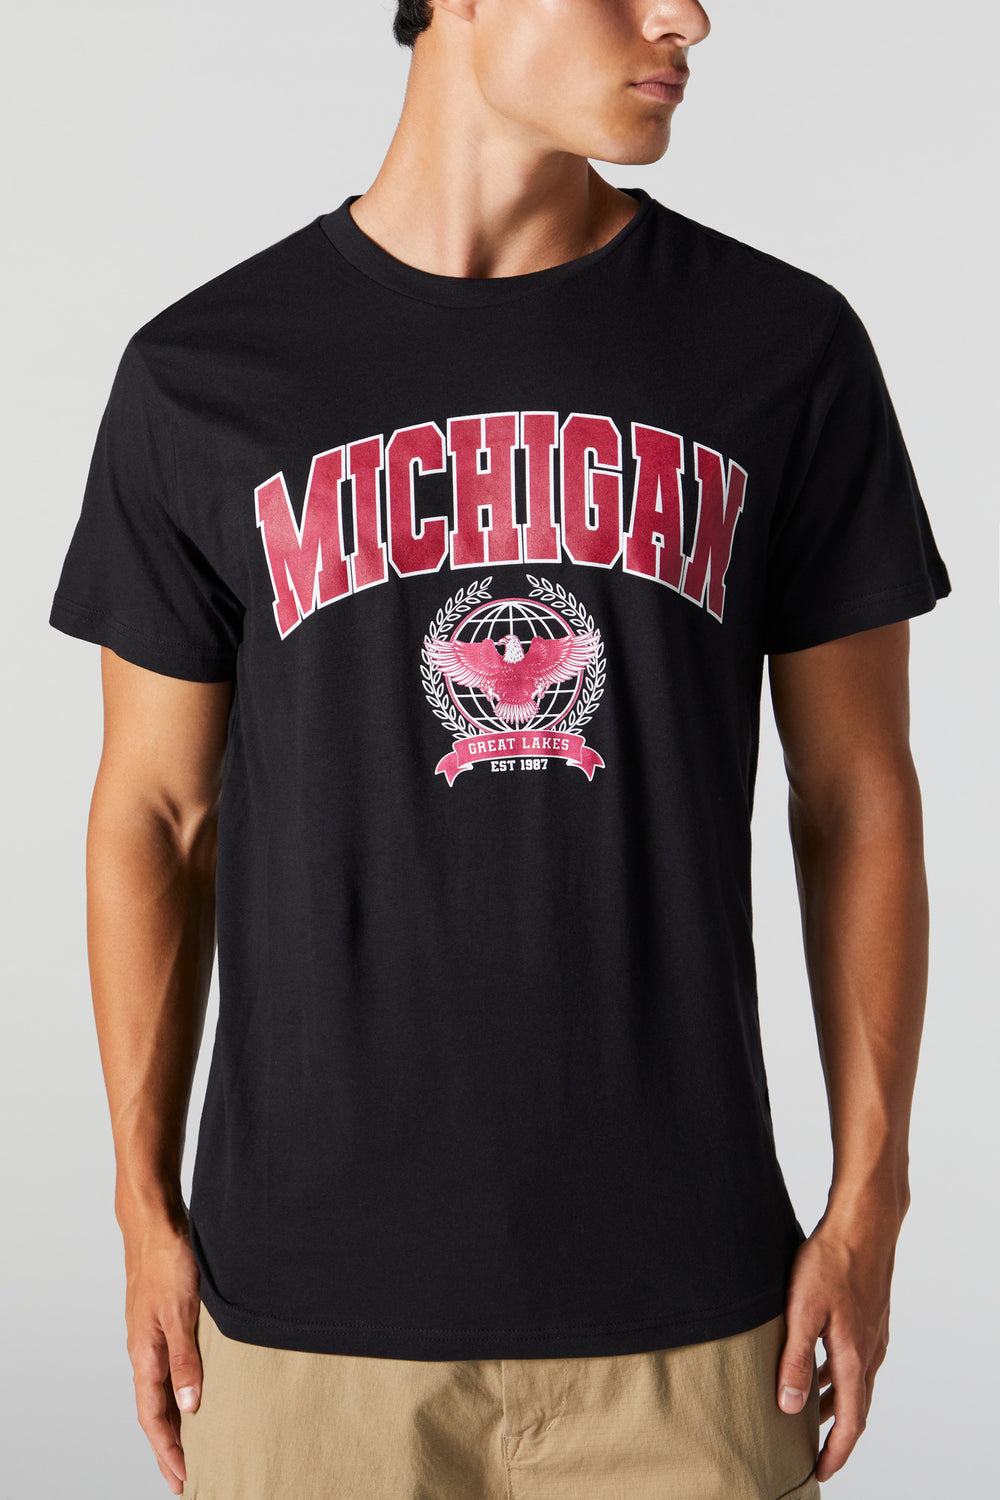 Michigan Graphic T-Shirt Michigan Graphic T-Shirt 2